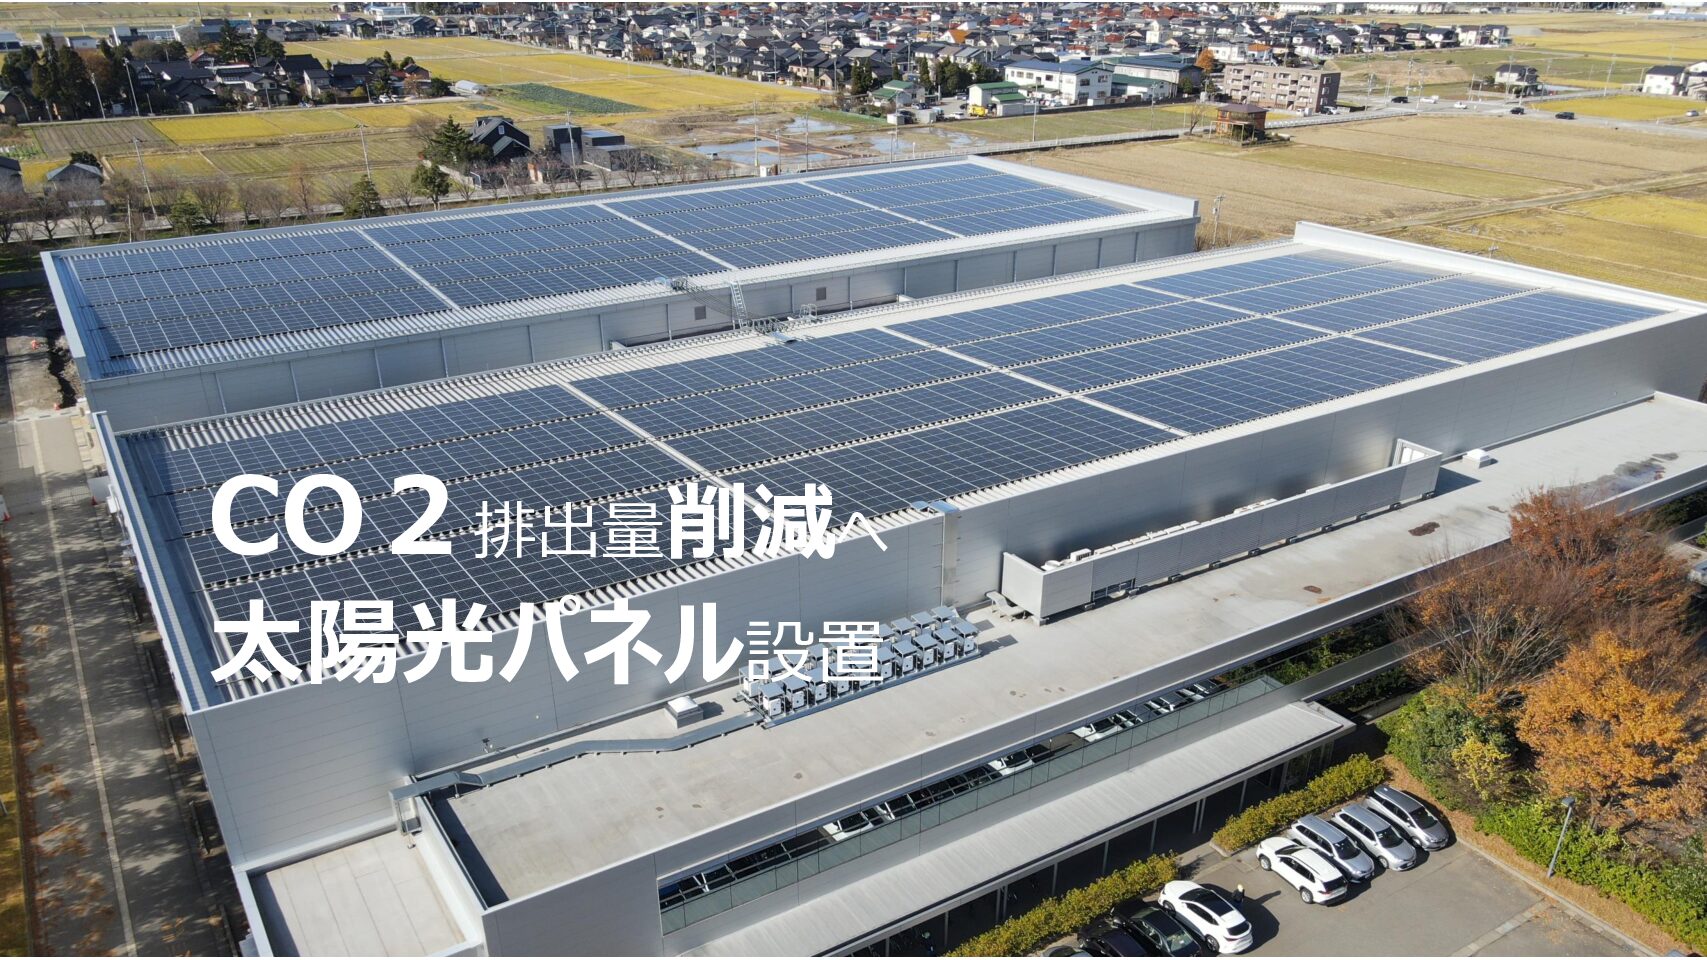 CO2排出量削減へ 工場屋根に太陽光パネル設置